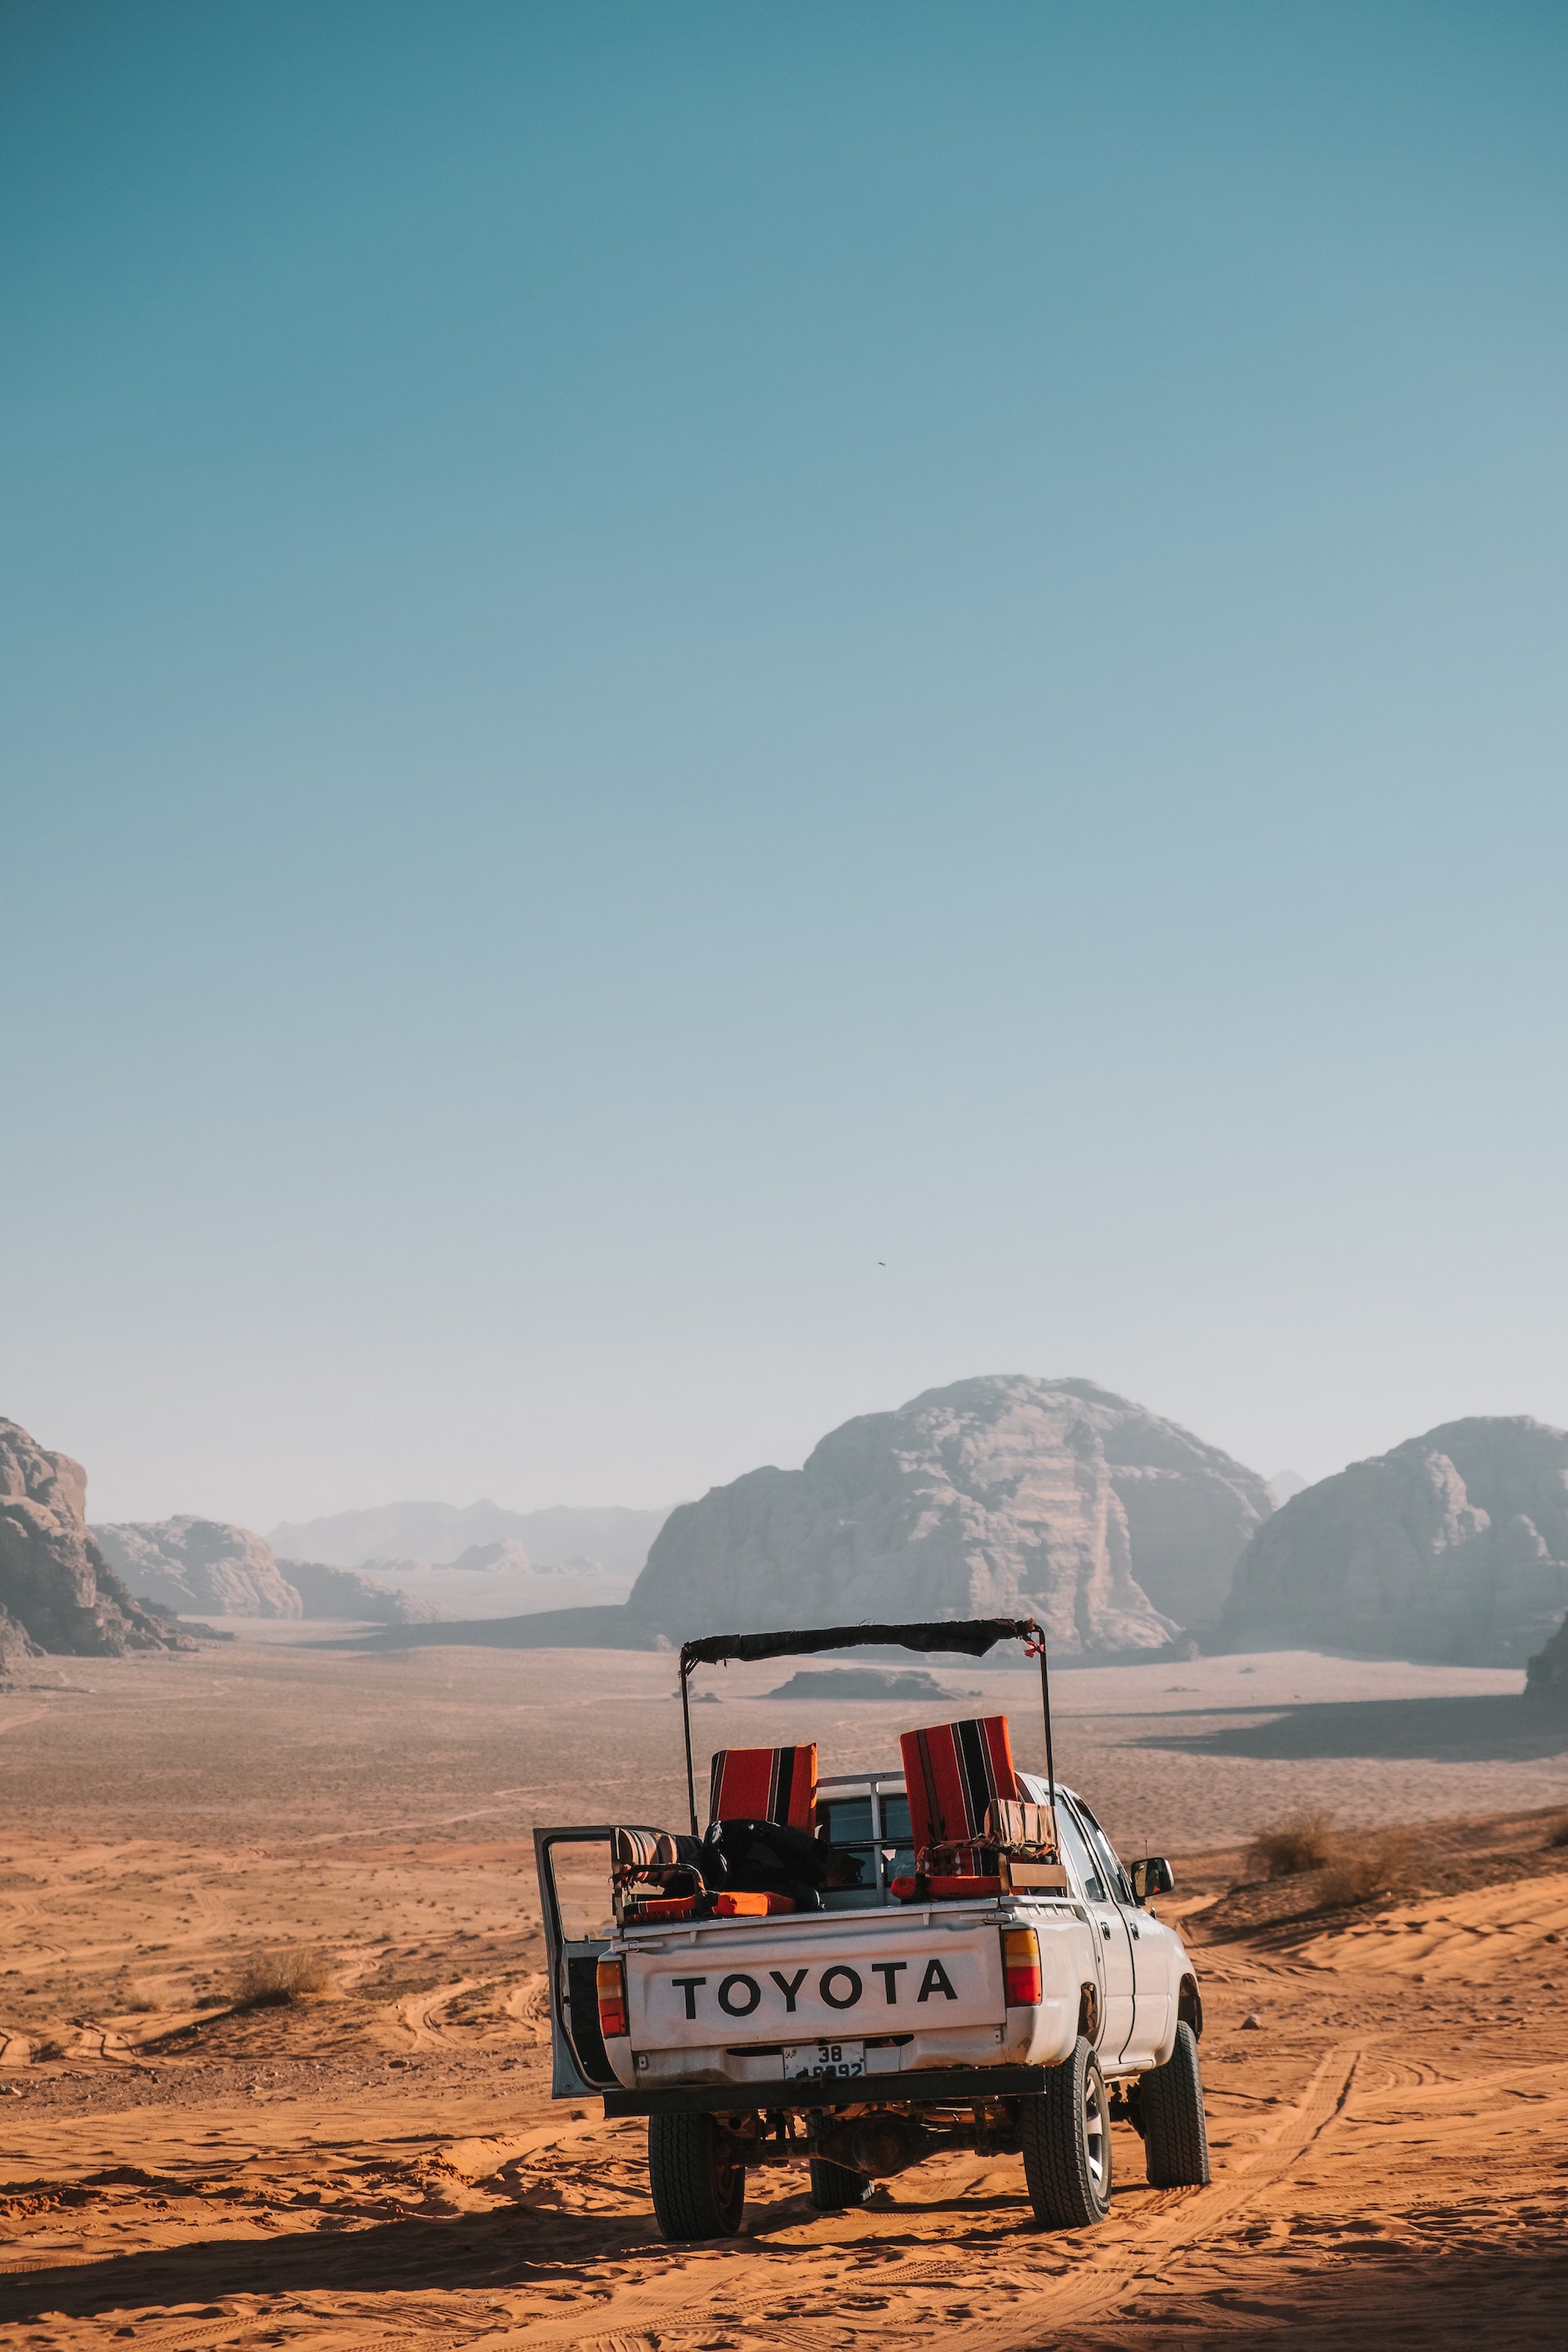 A Toyota truck driving through a barren landscape.